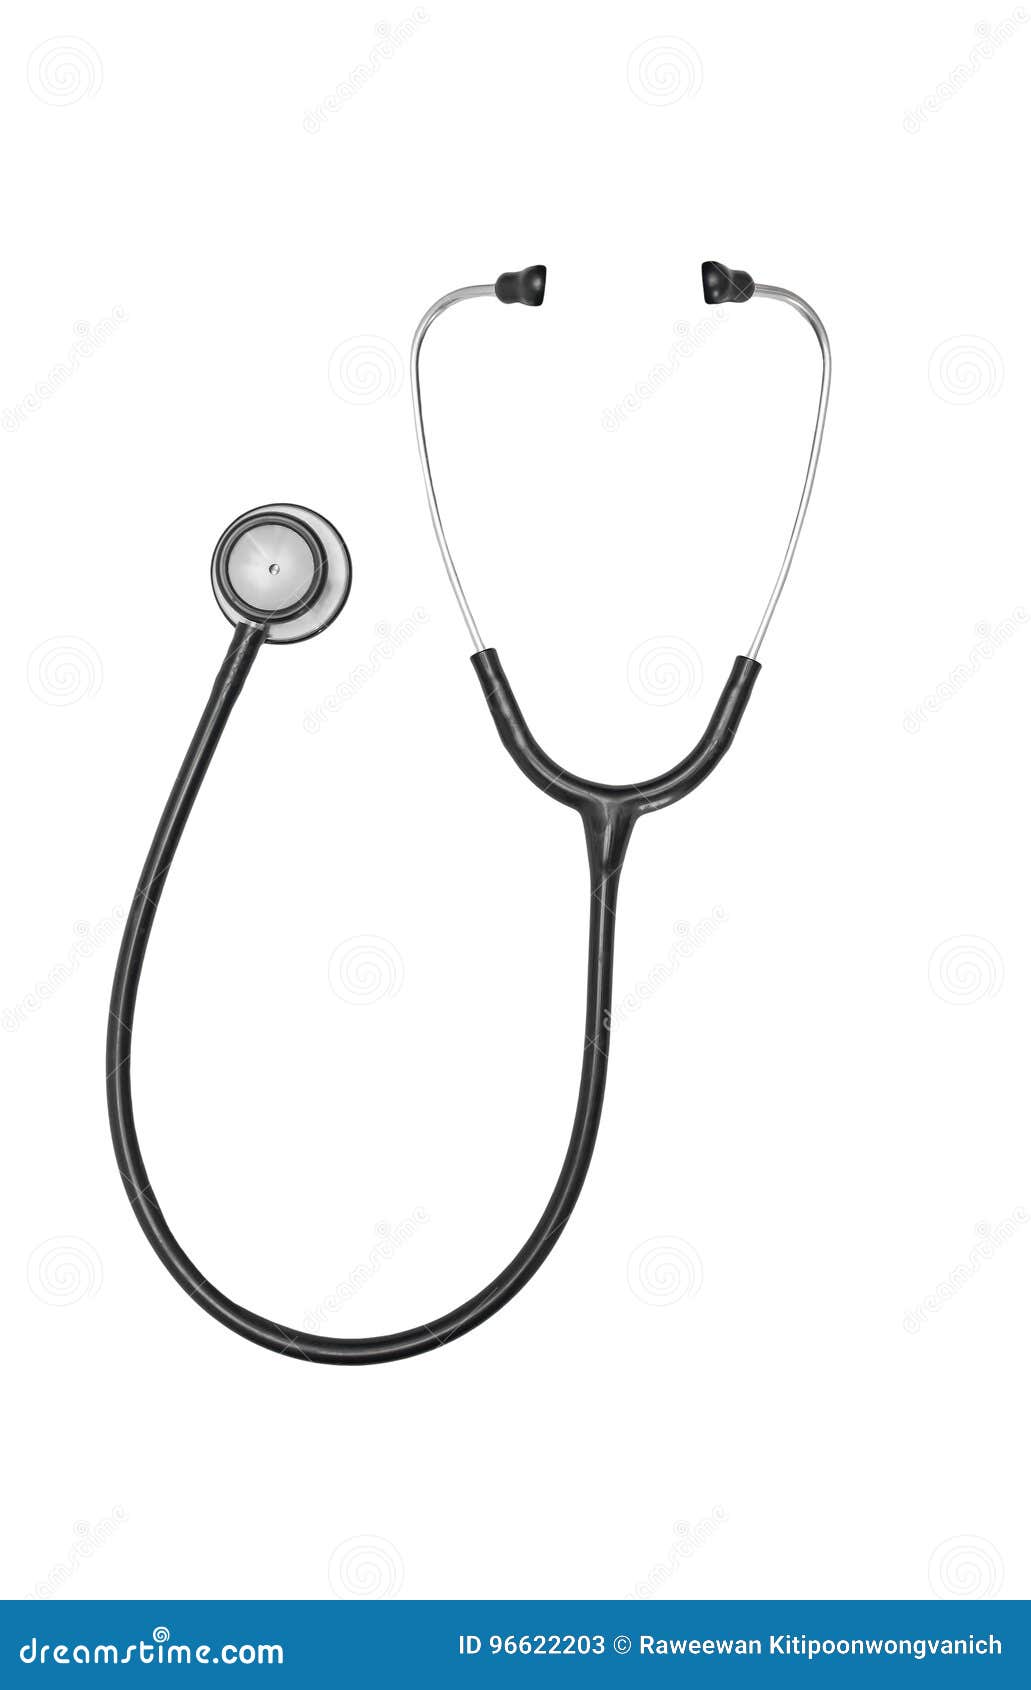 Black Stethoscope Isolated on White Stock Image - Image of cardiology ...